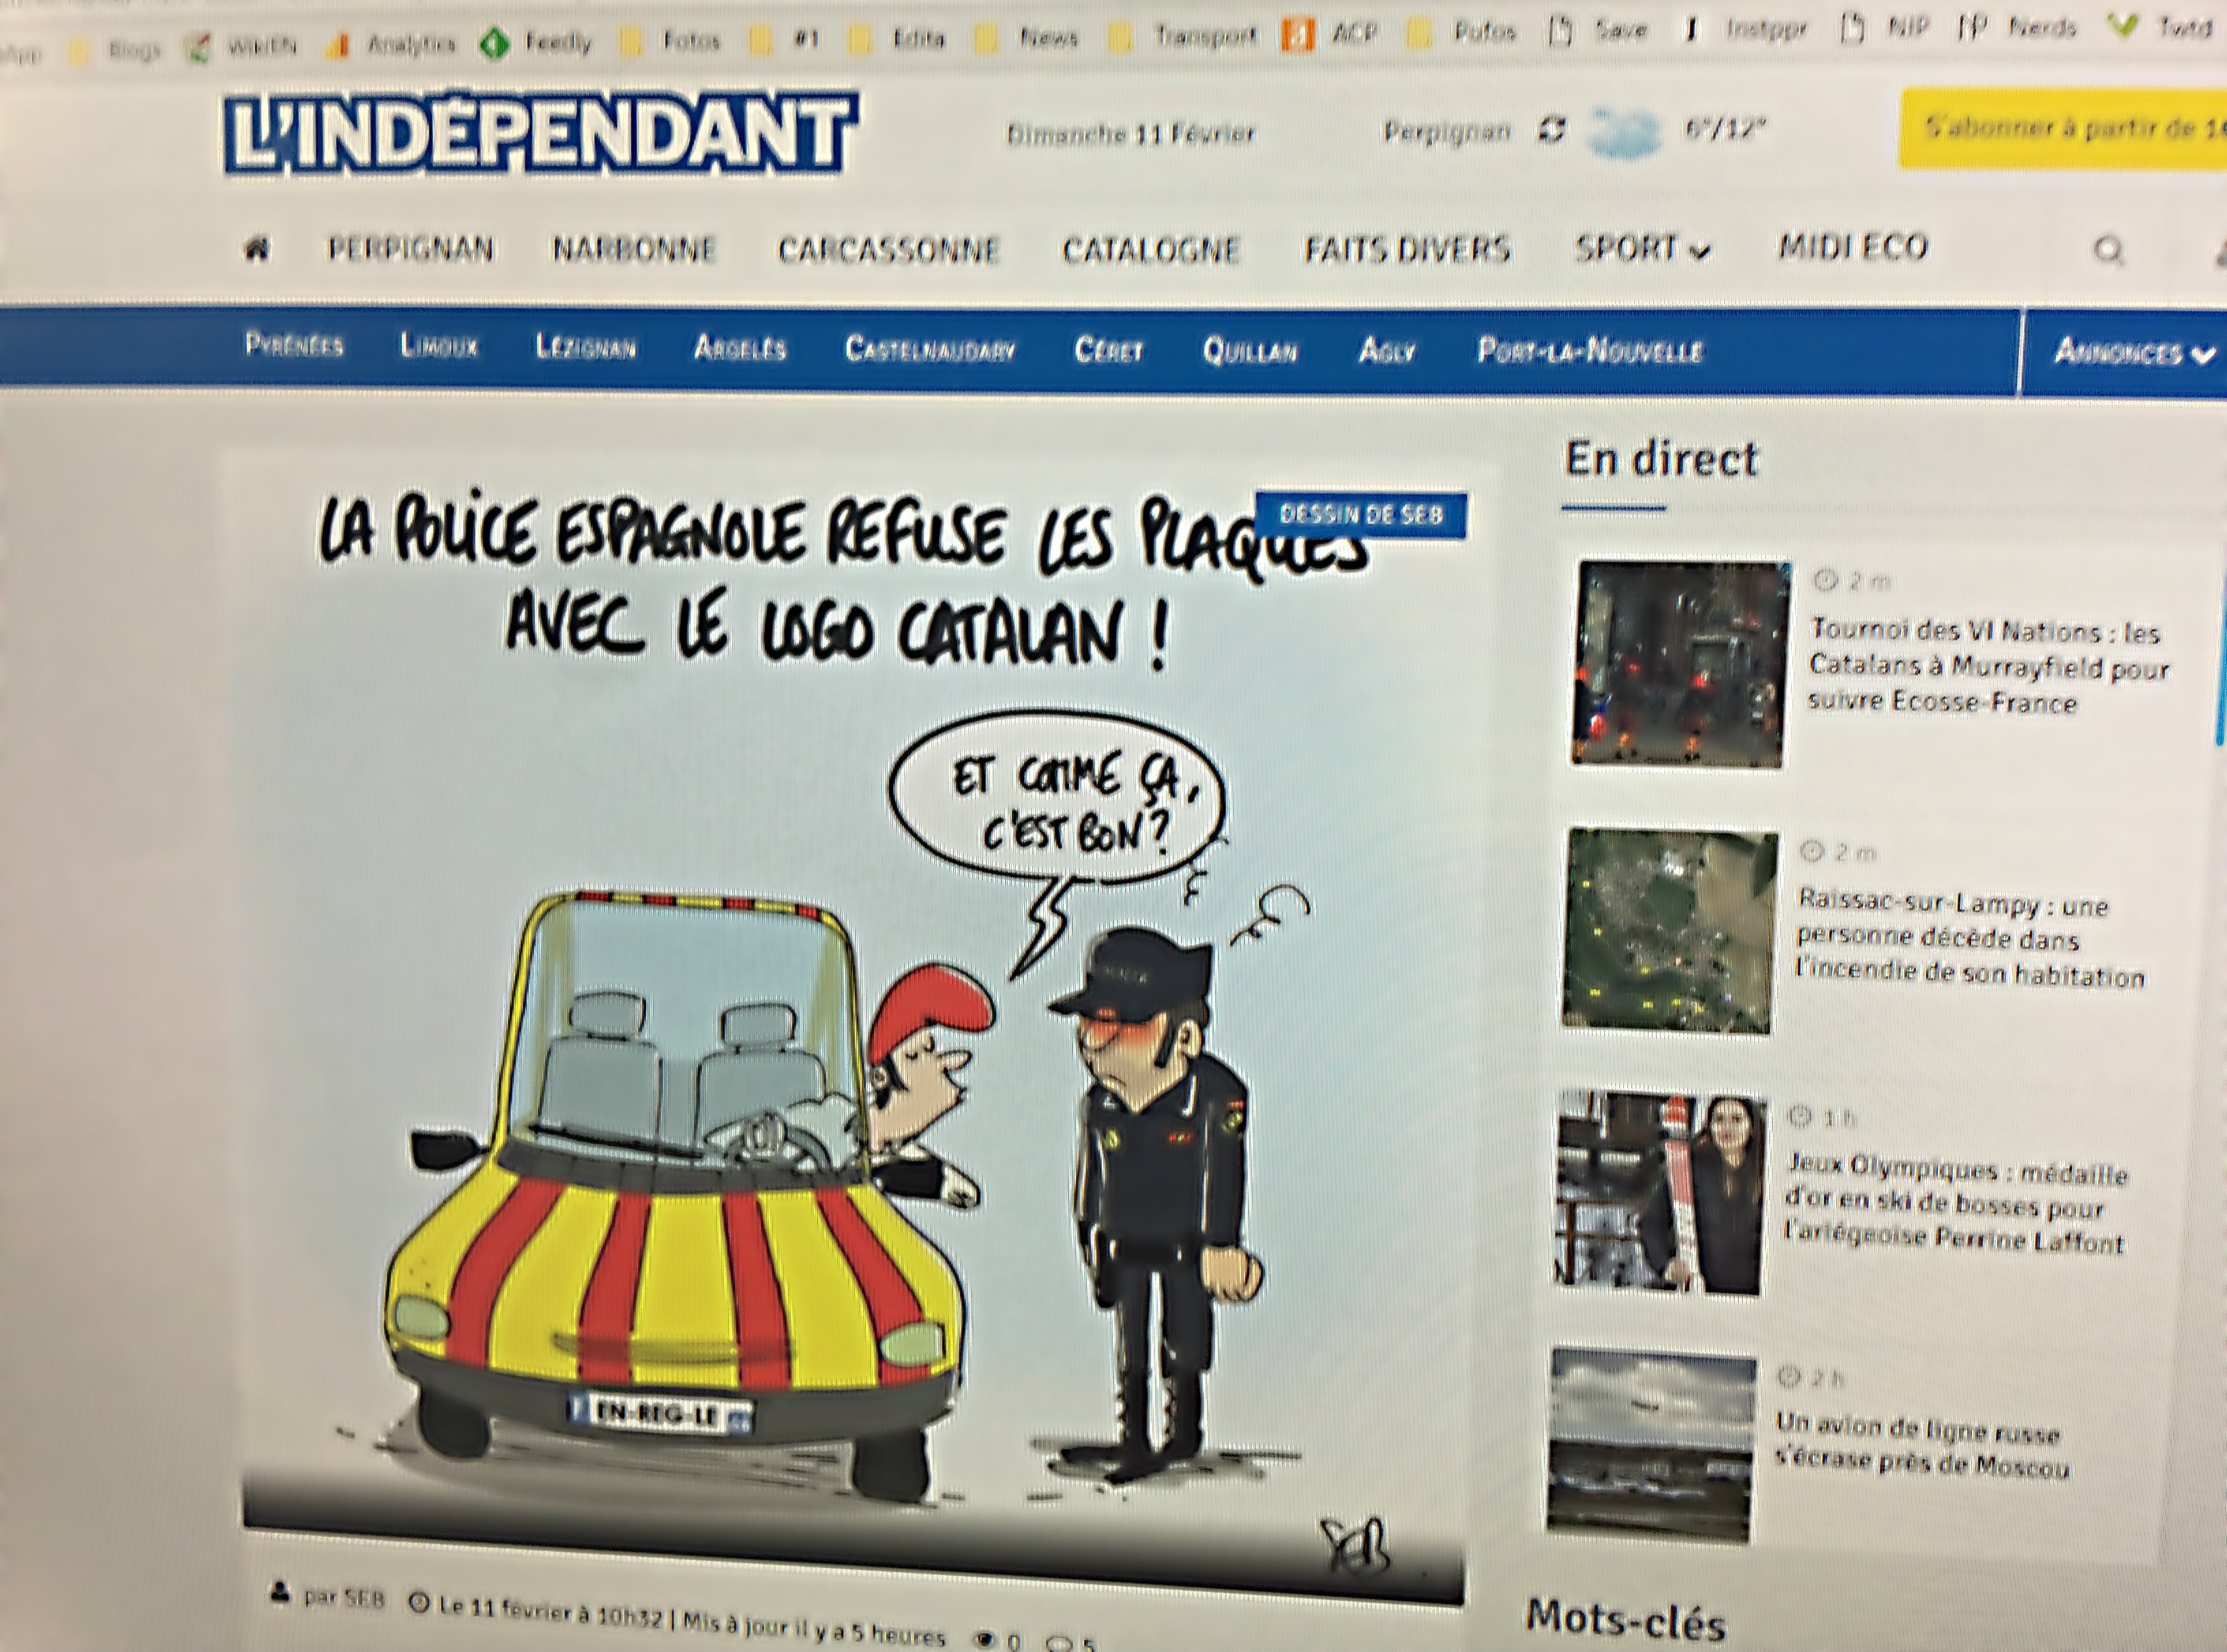 El diario de Perpinyà se ríe de la manía de la policía española con las matrículas